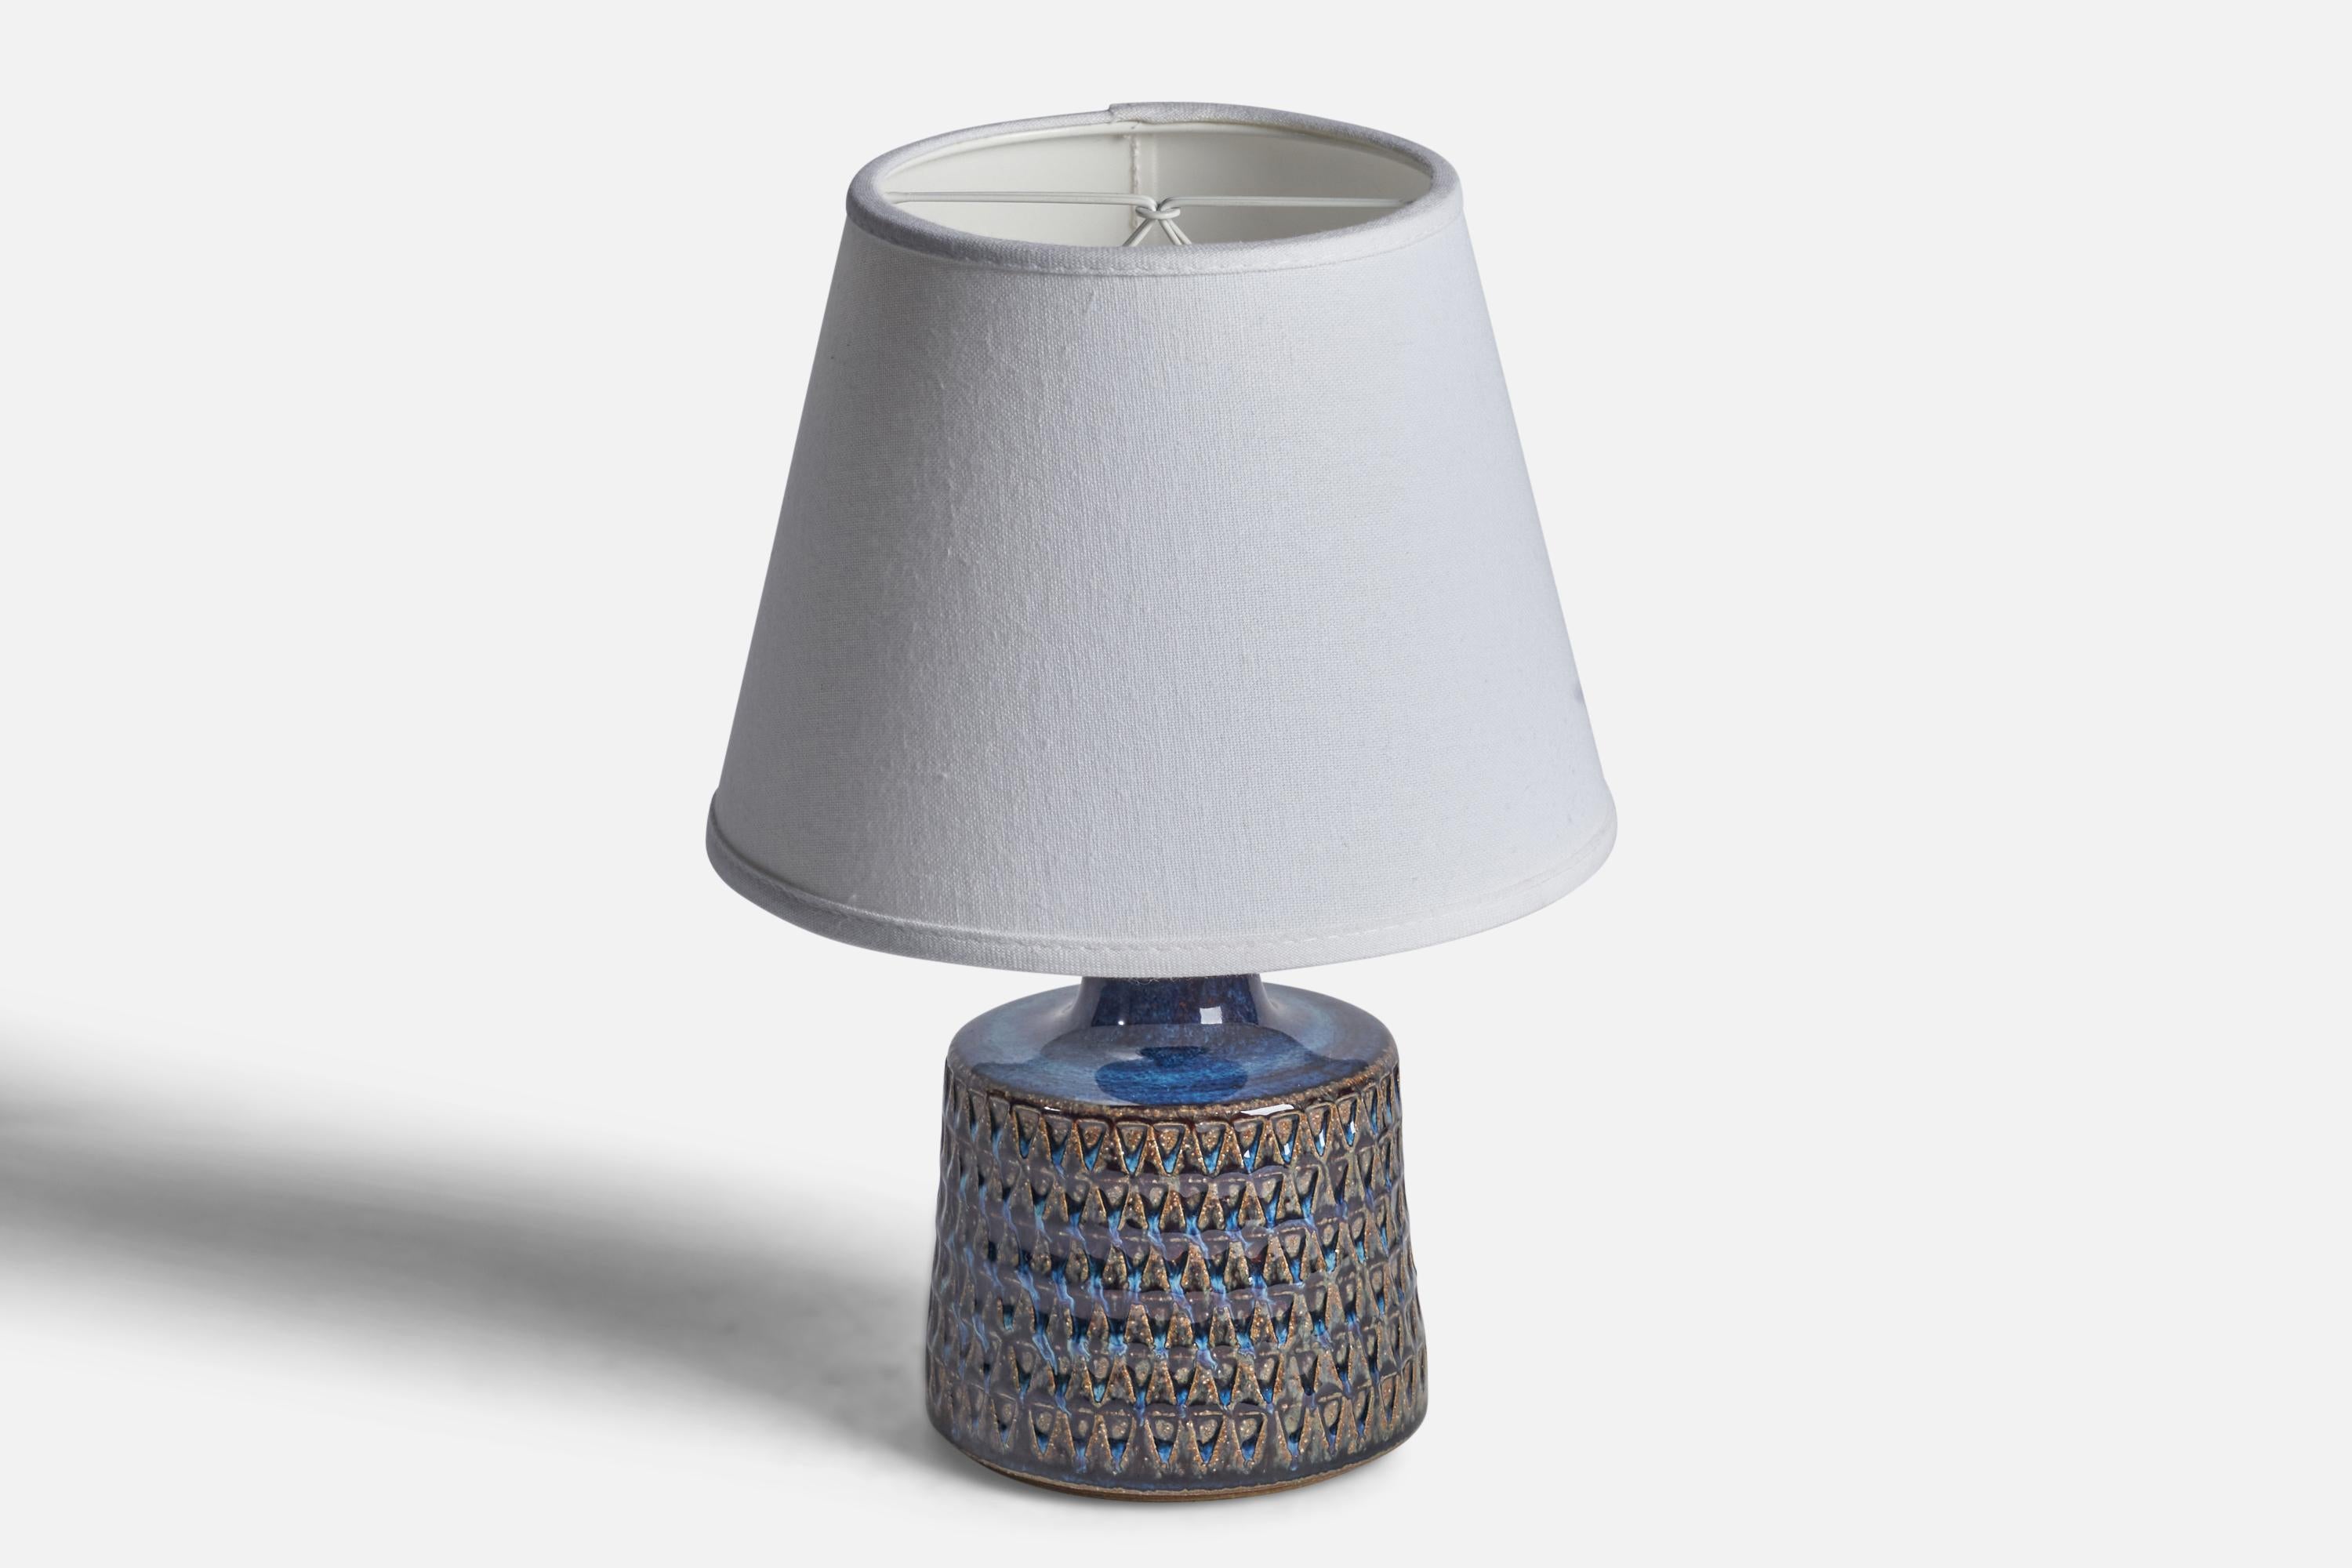 Lampe de table en grès incisé à glaçure bleue et brune, conçue et produite par Søholm, Danemark, années 1960.

Dimensions de la lampe (pouces) : 9